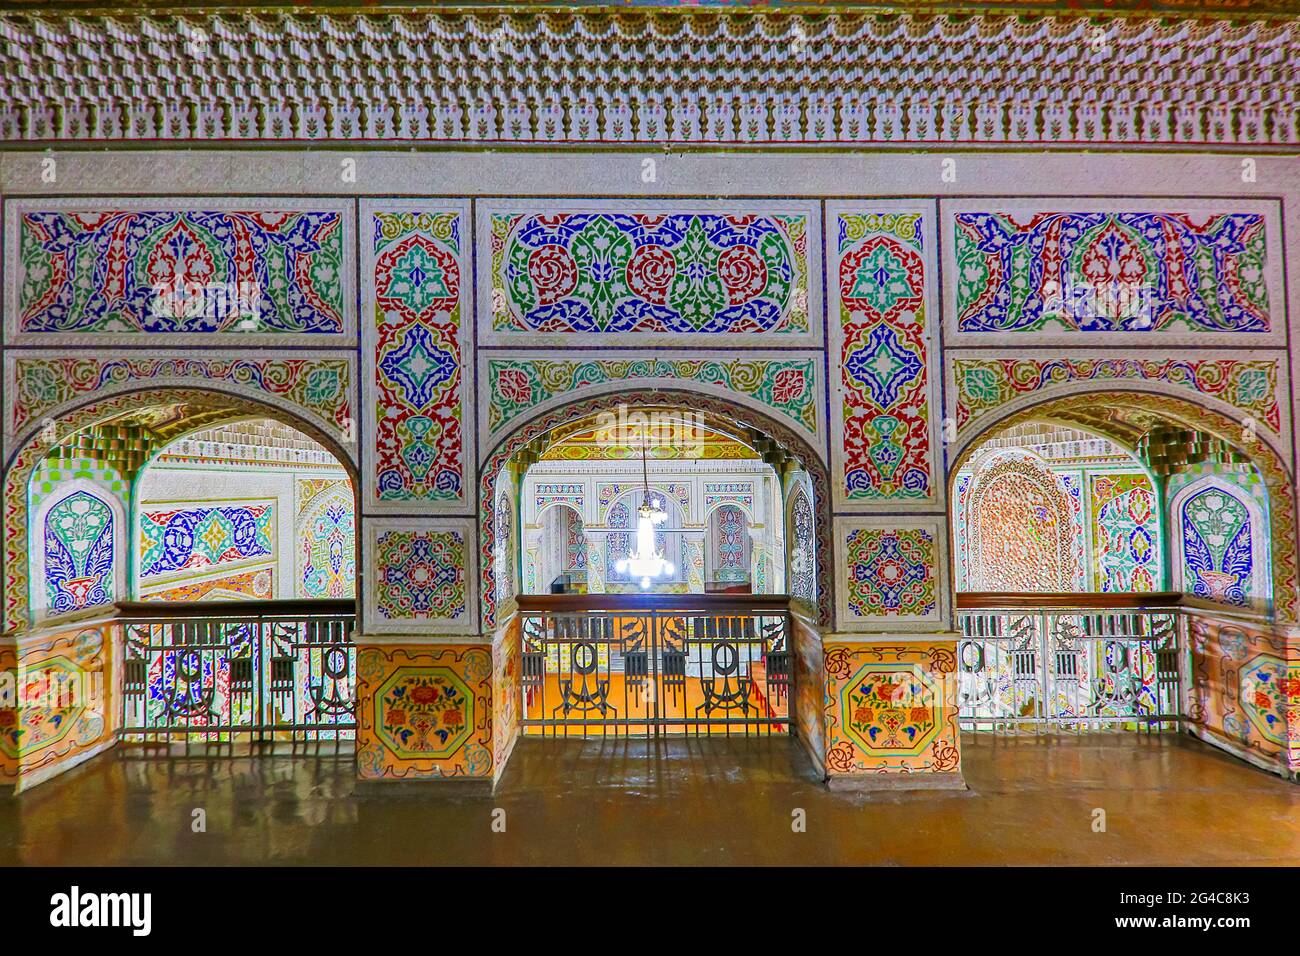 Das Innere einer historischen Synagoge in der alten Residenz eines lokalen jüdischen Mannes, in Samarkand, Usbekistan. Stockfoto